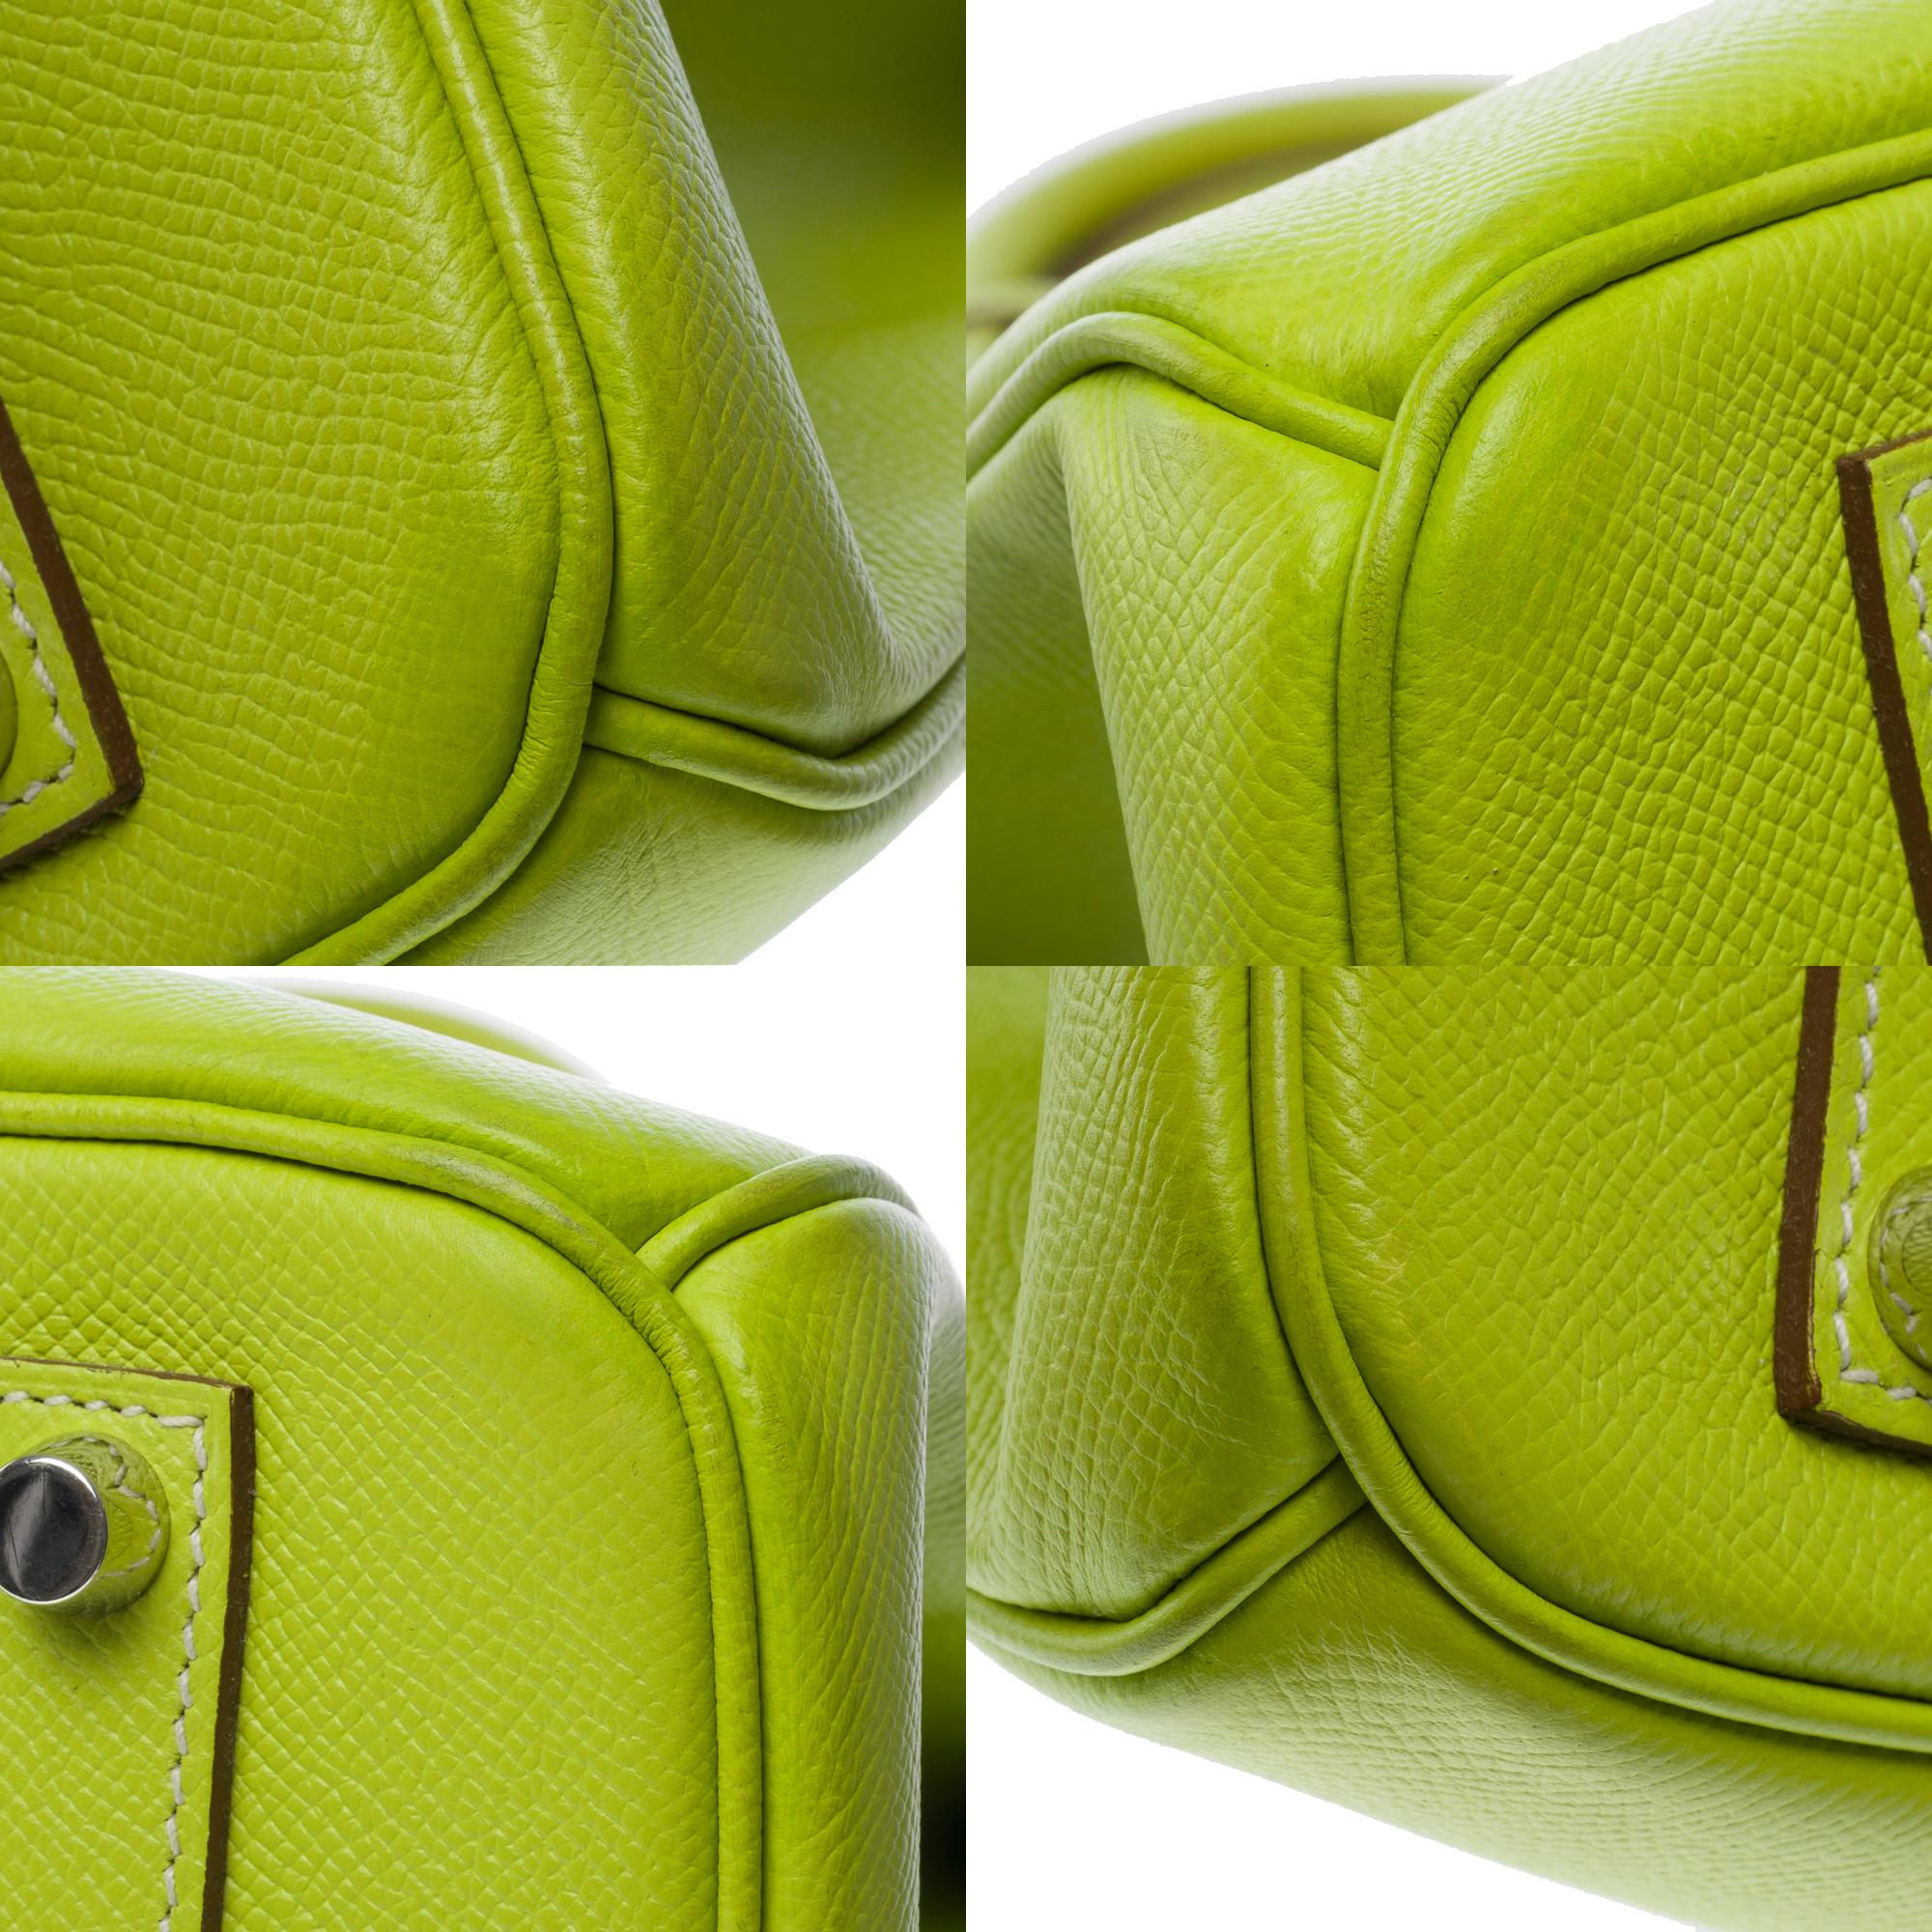 Candy limited edition Hermès Birkin 35 handbag in Kiwi Green epsom leather, SHW 8